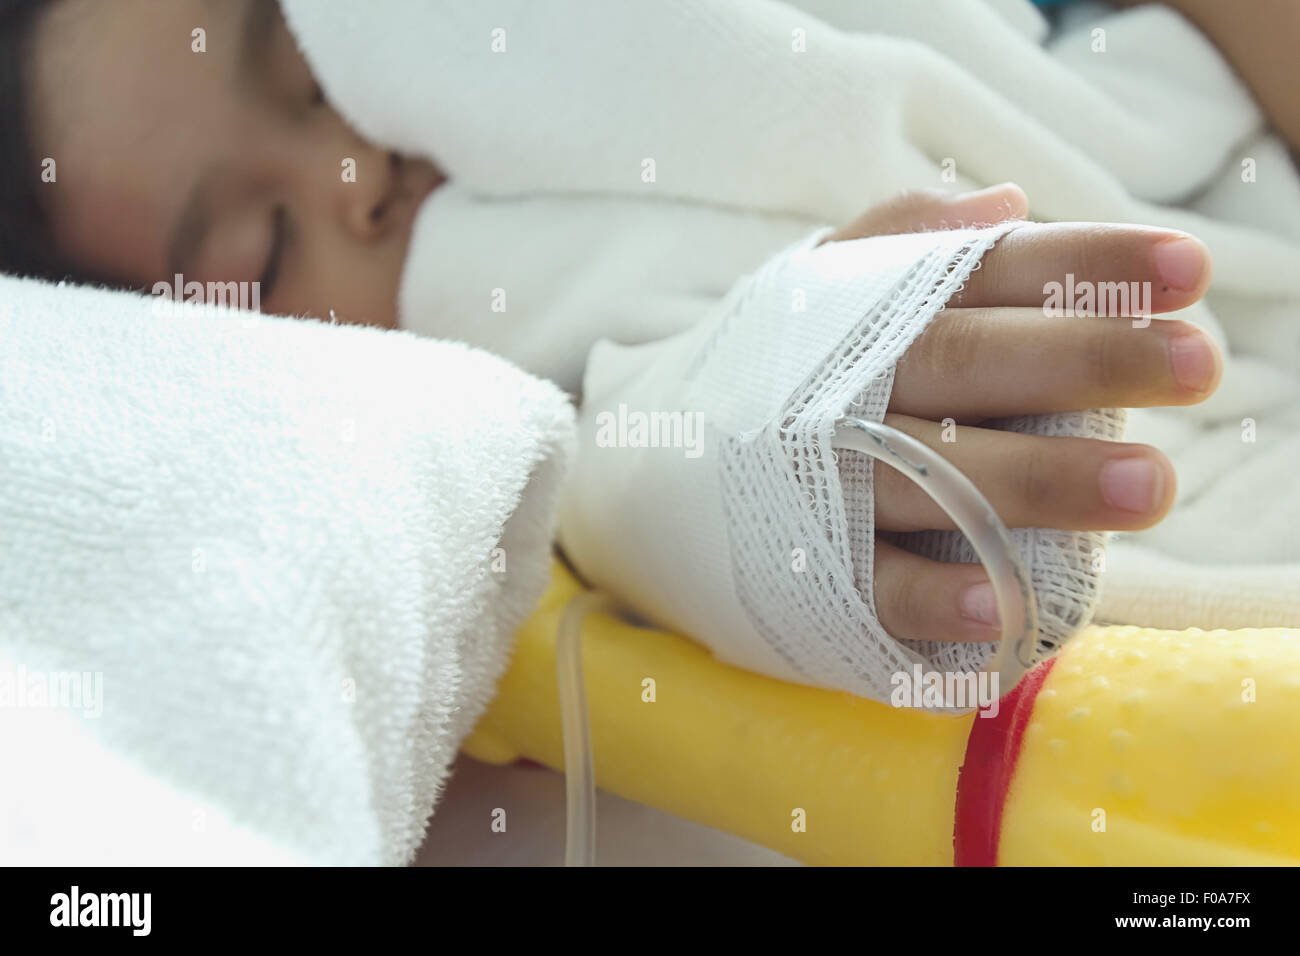 Malattia bambini asiatici addormentato su un sickbed in ospedale, soluzione salina per via intravenosa (IV) a portata di mano Foto Stock